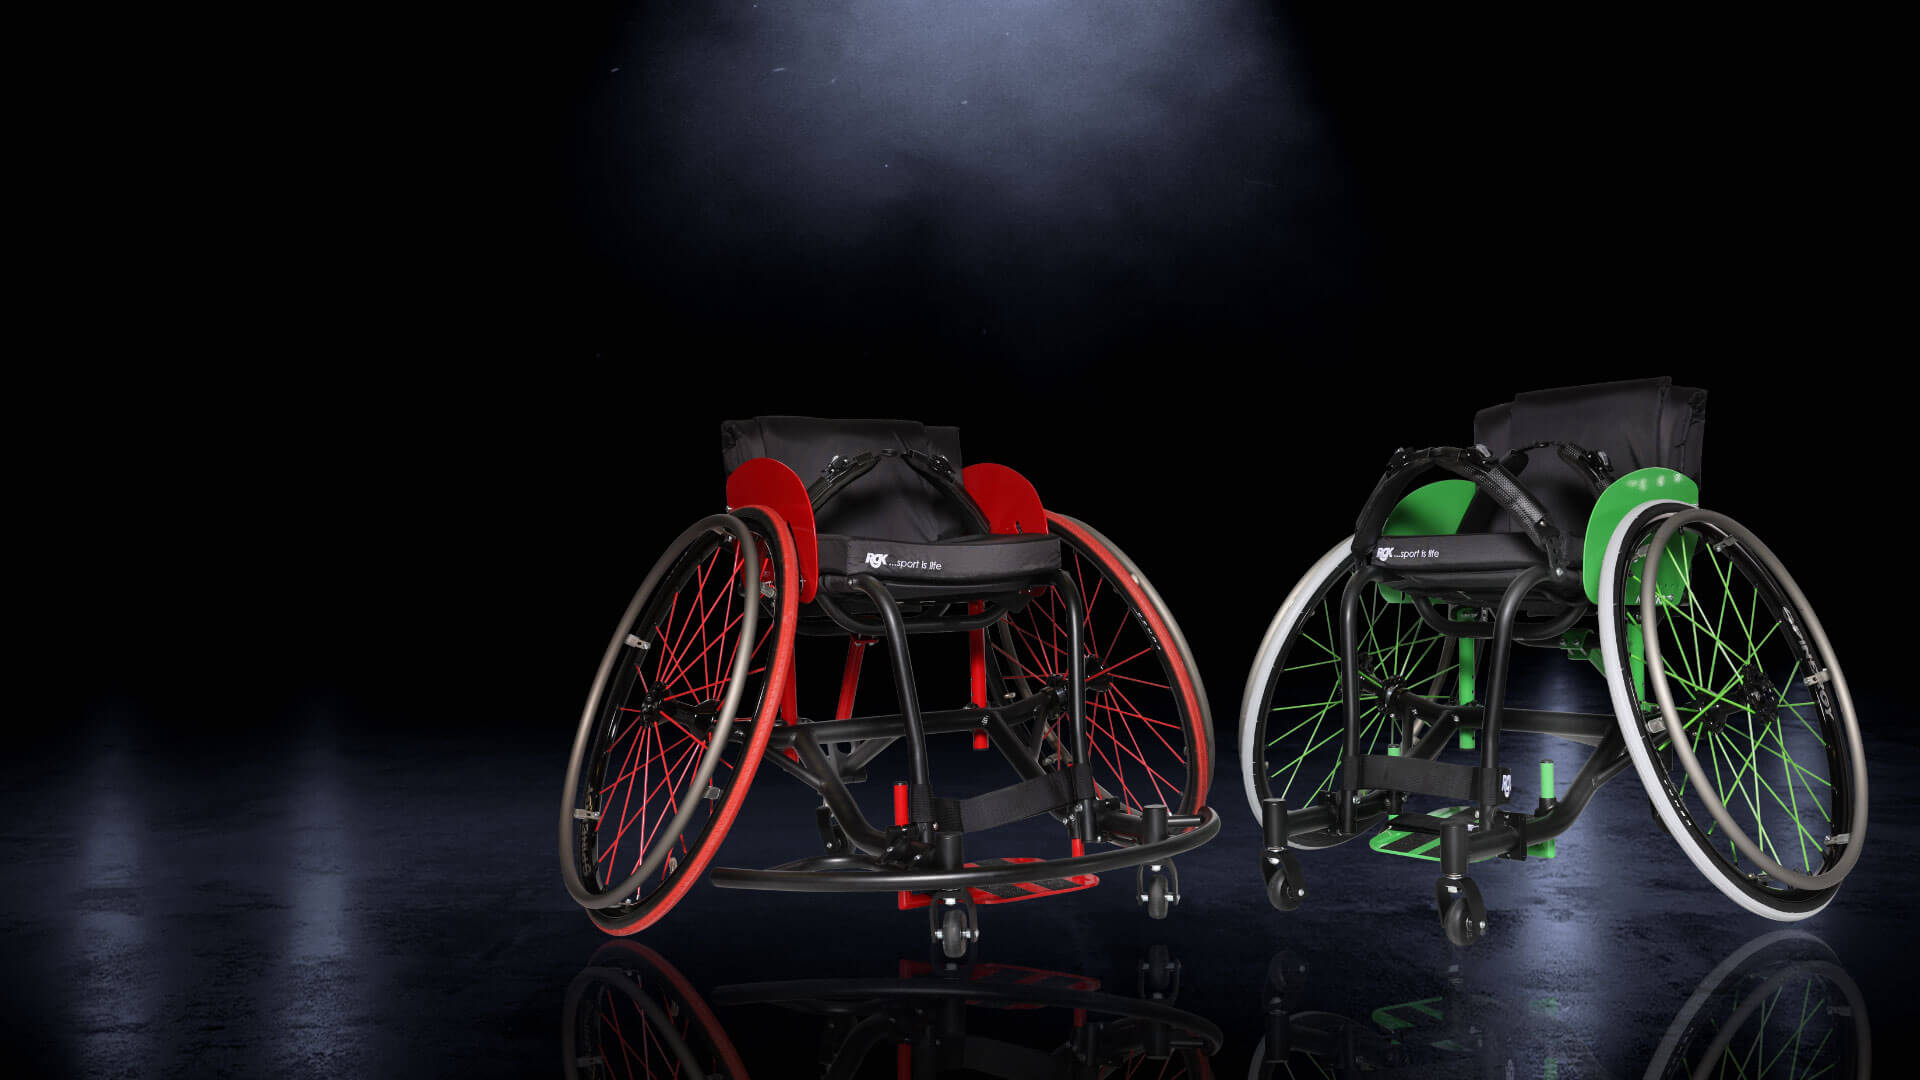 RGK Allstar A2 - pierwszy w pełni regulowany sportowy wózek inwalidzki RGK przystosowany do wielu dyscyplin sportowych